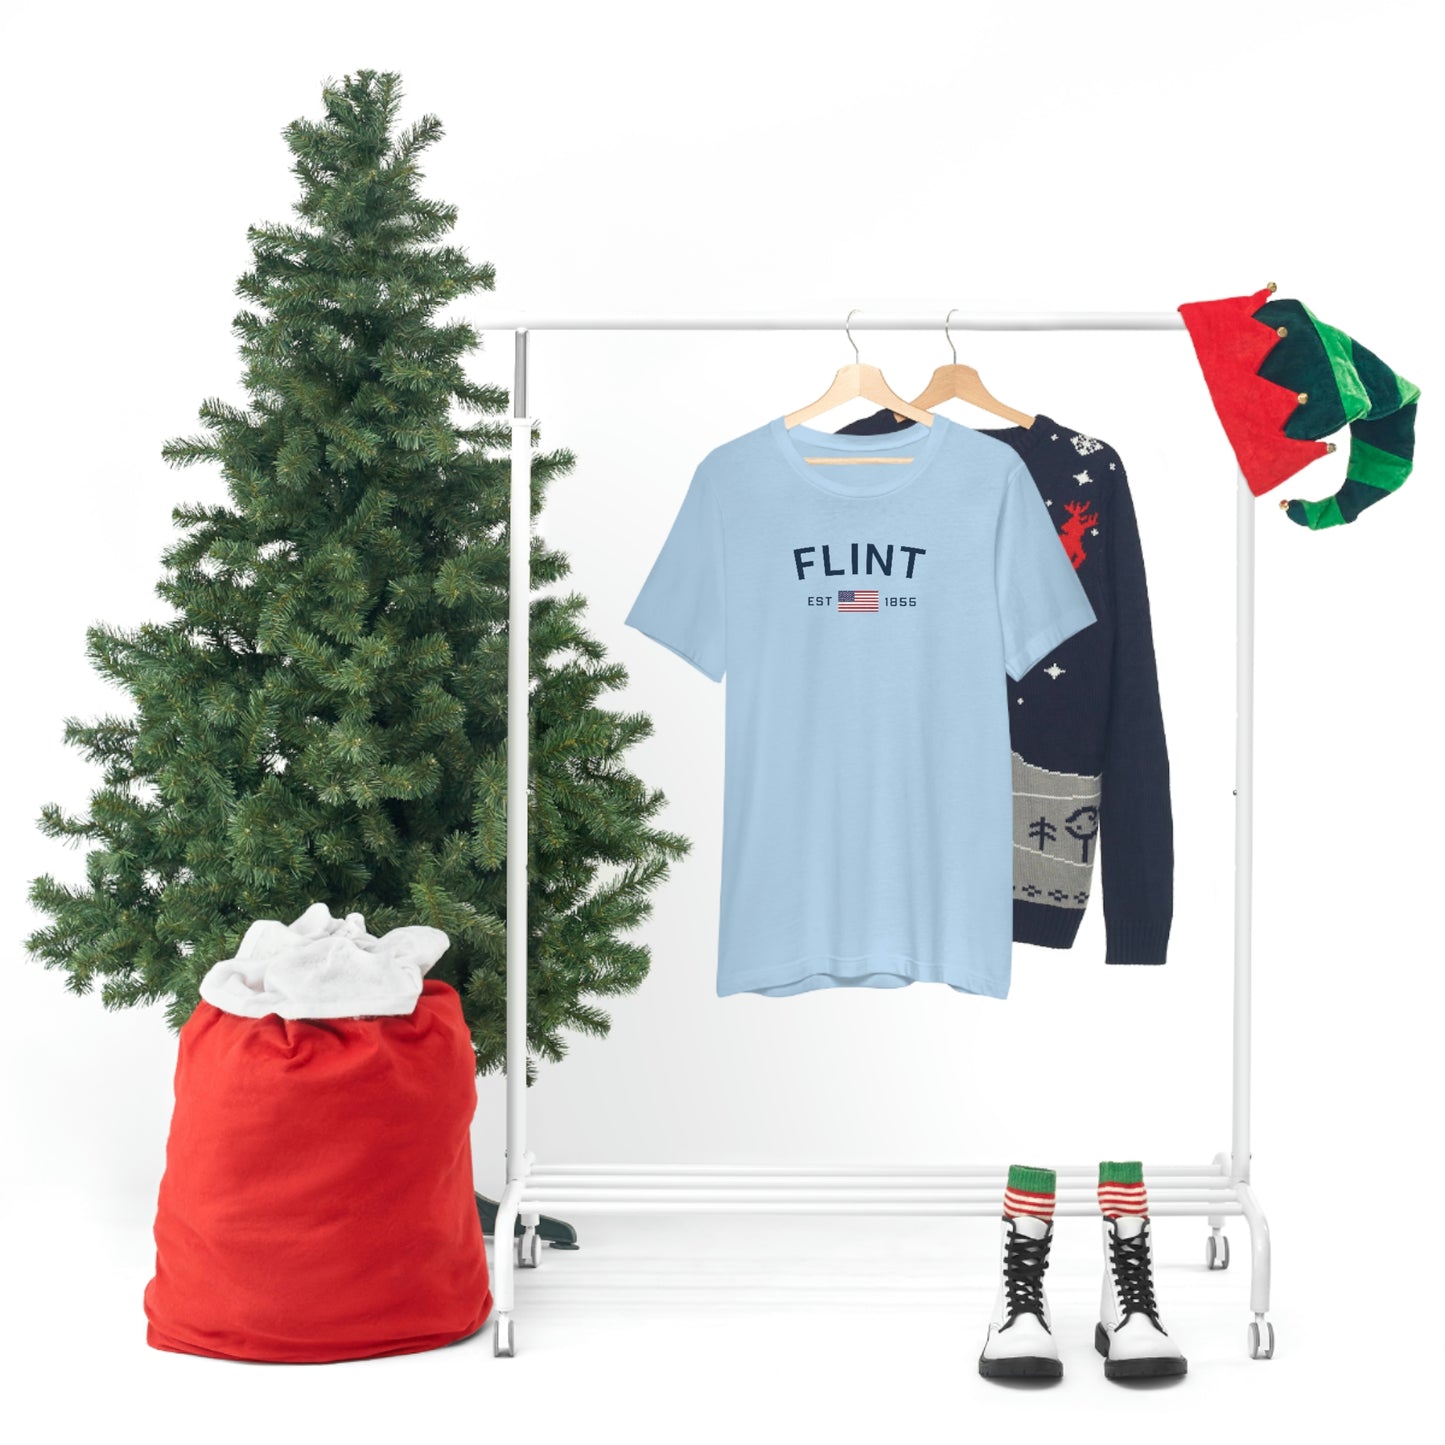 'Flint EST 1855' T-Shirt | Unisex Standard Fit